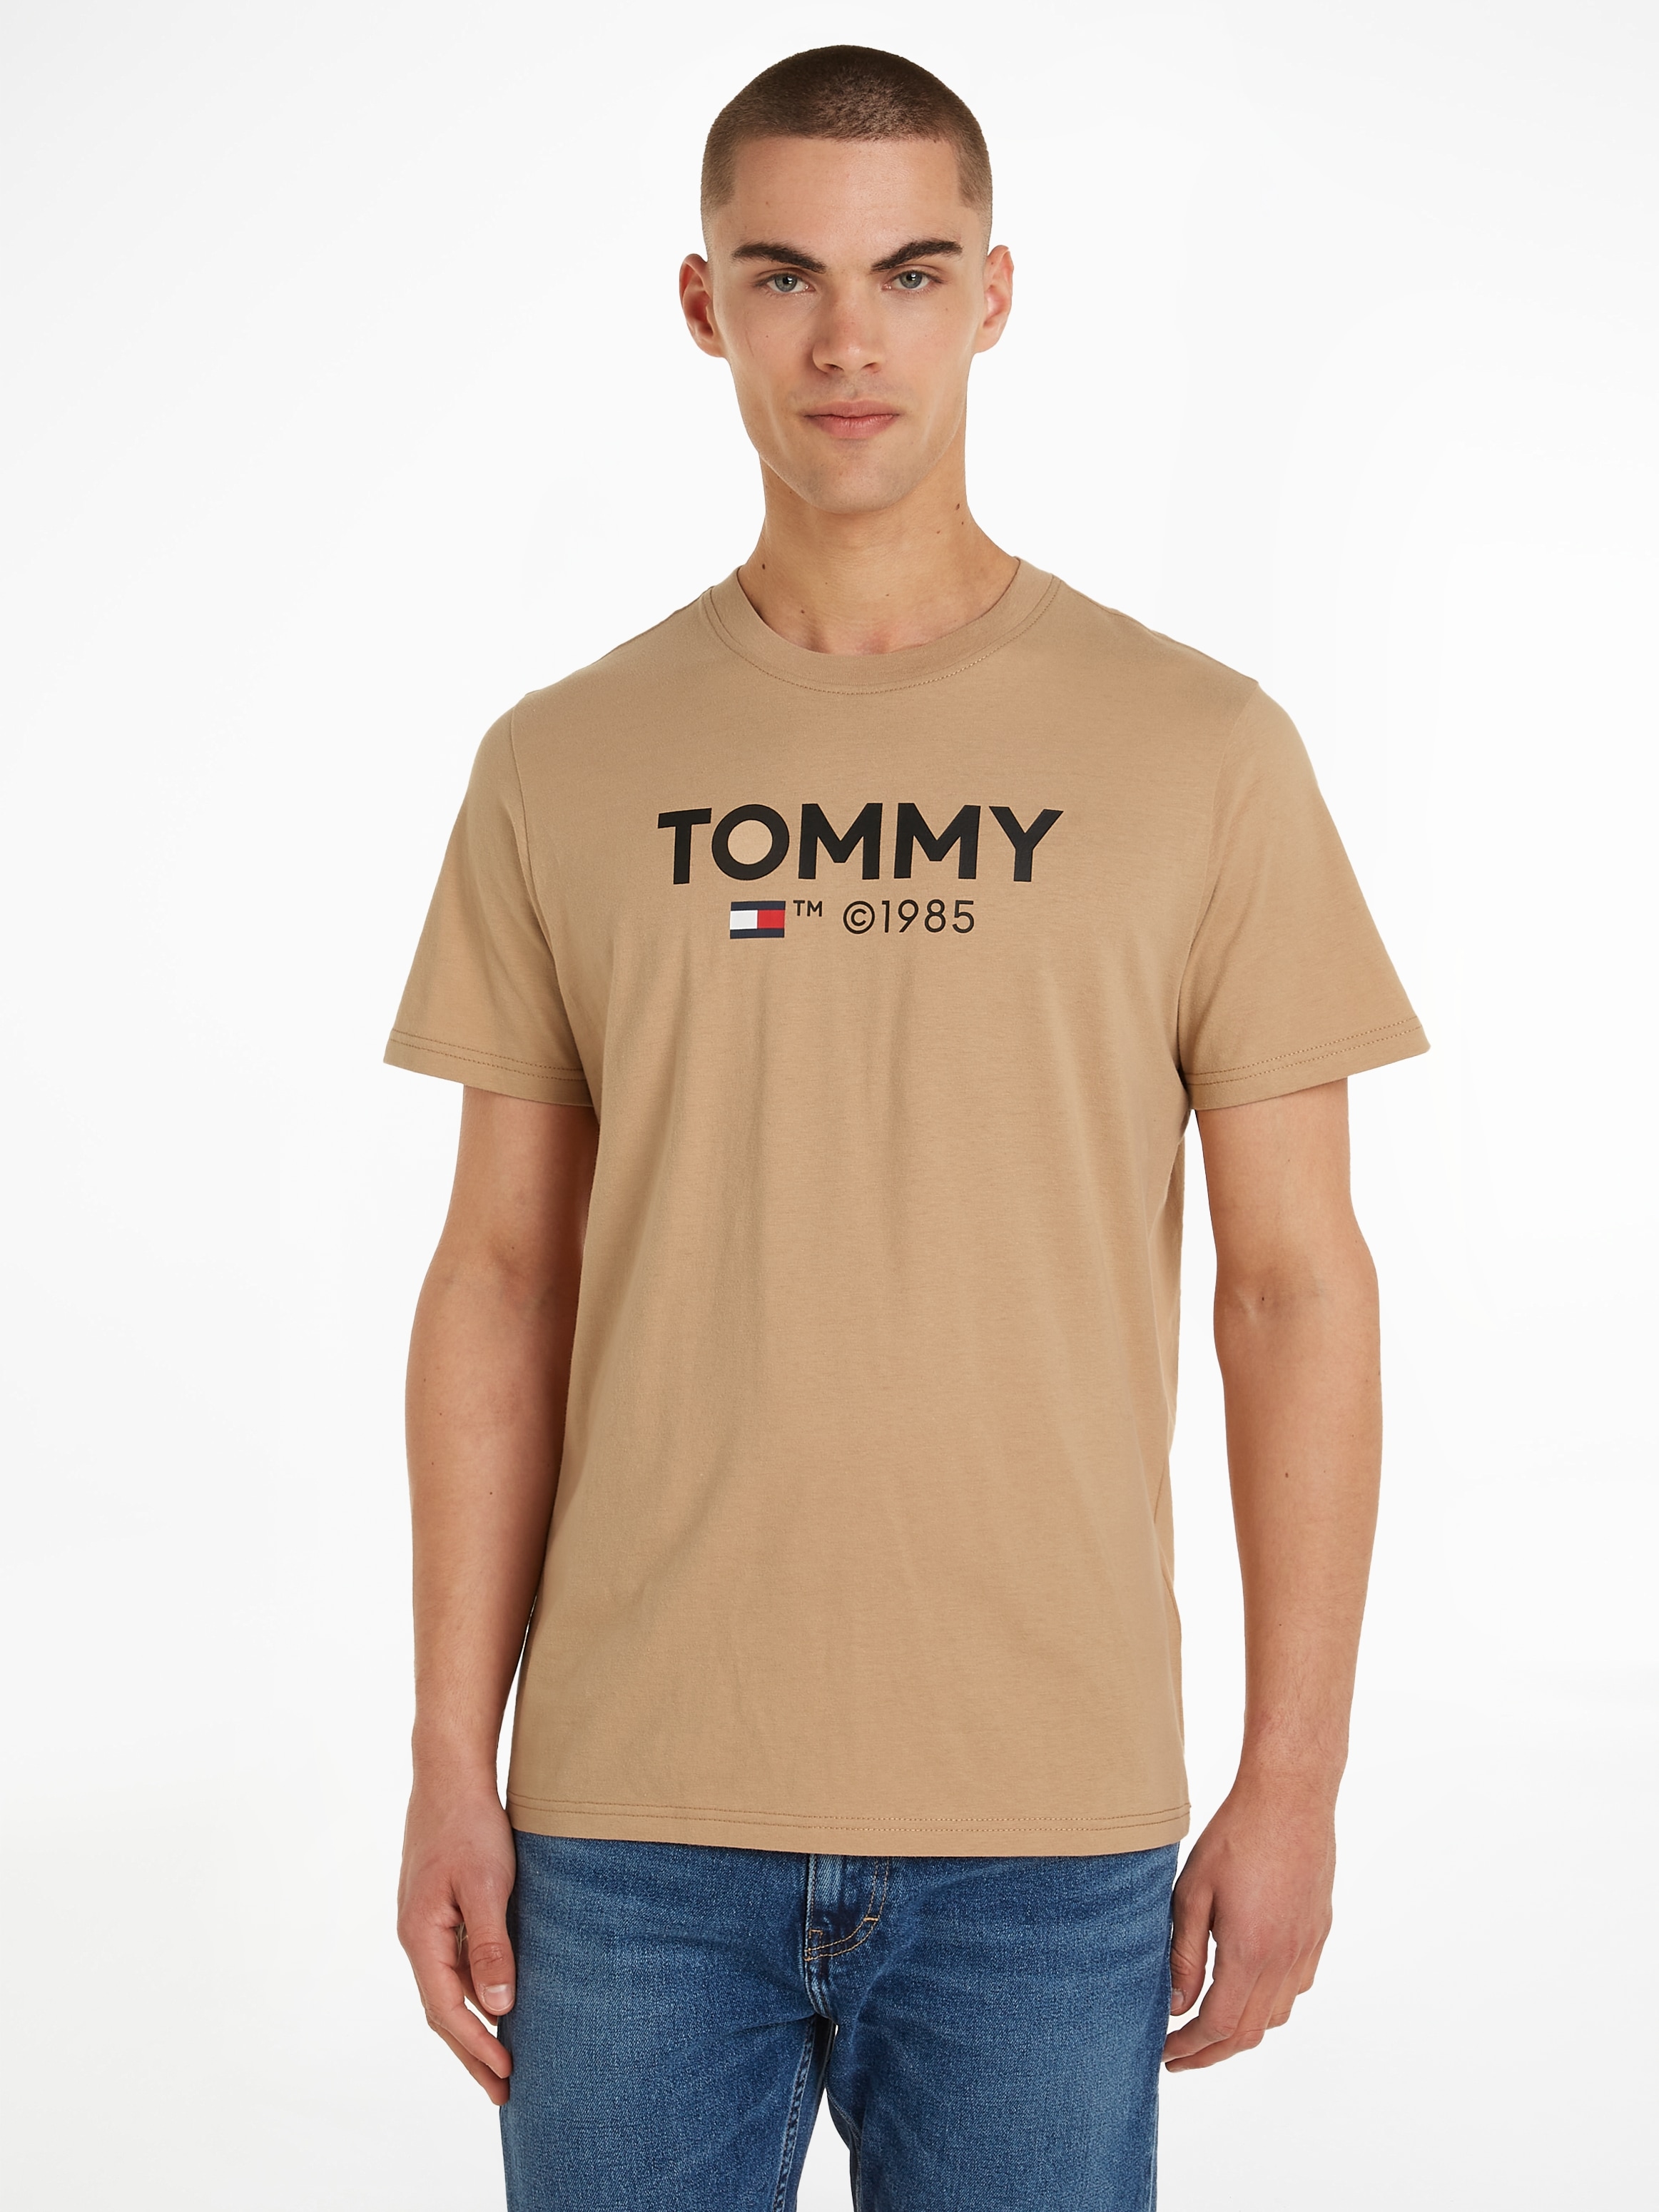 TOMMY JEANS Tommy Džinsai Marškinėliai »TJM SLIM E...